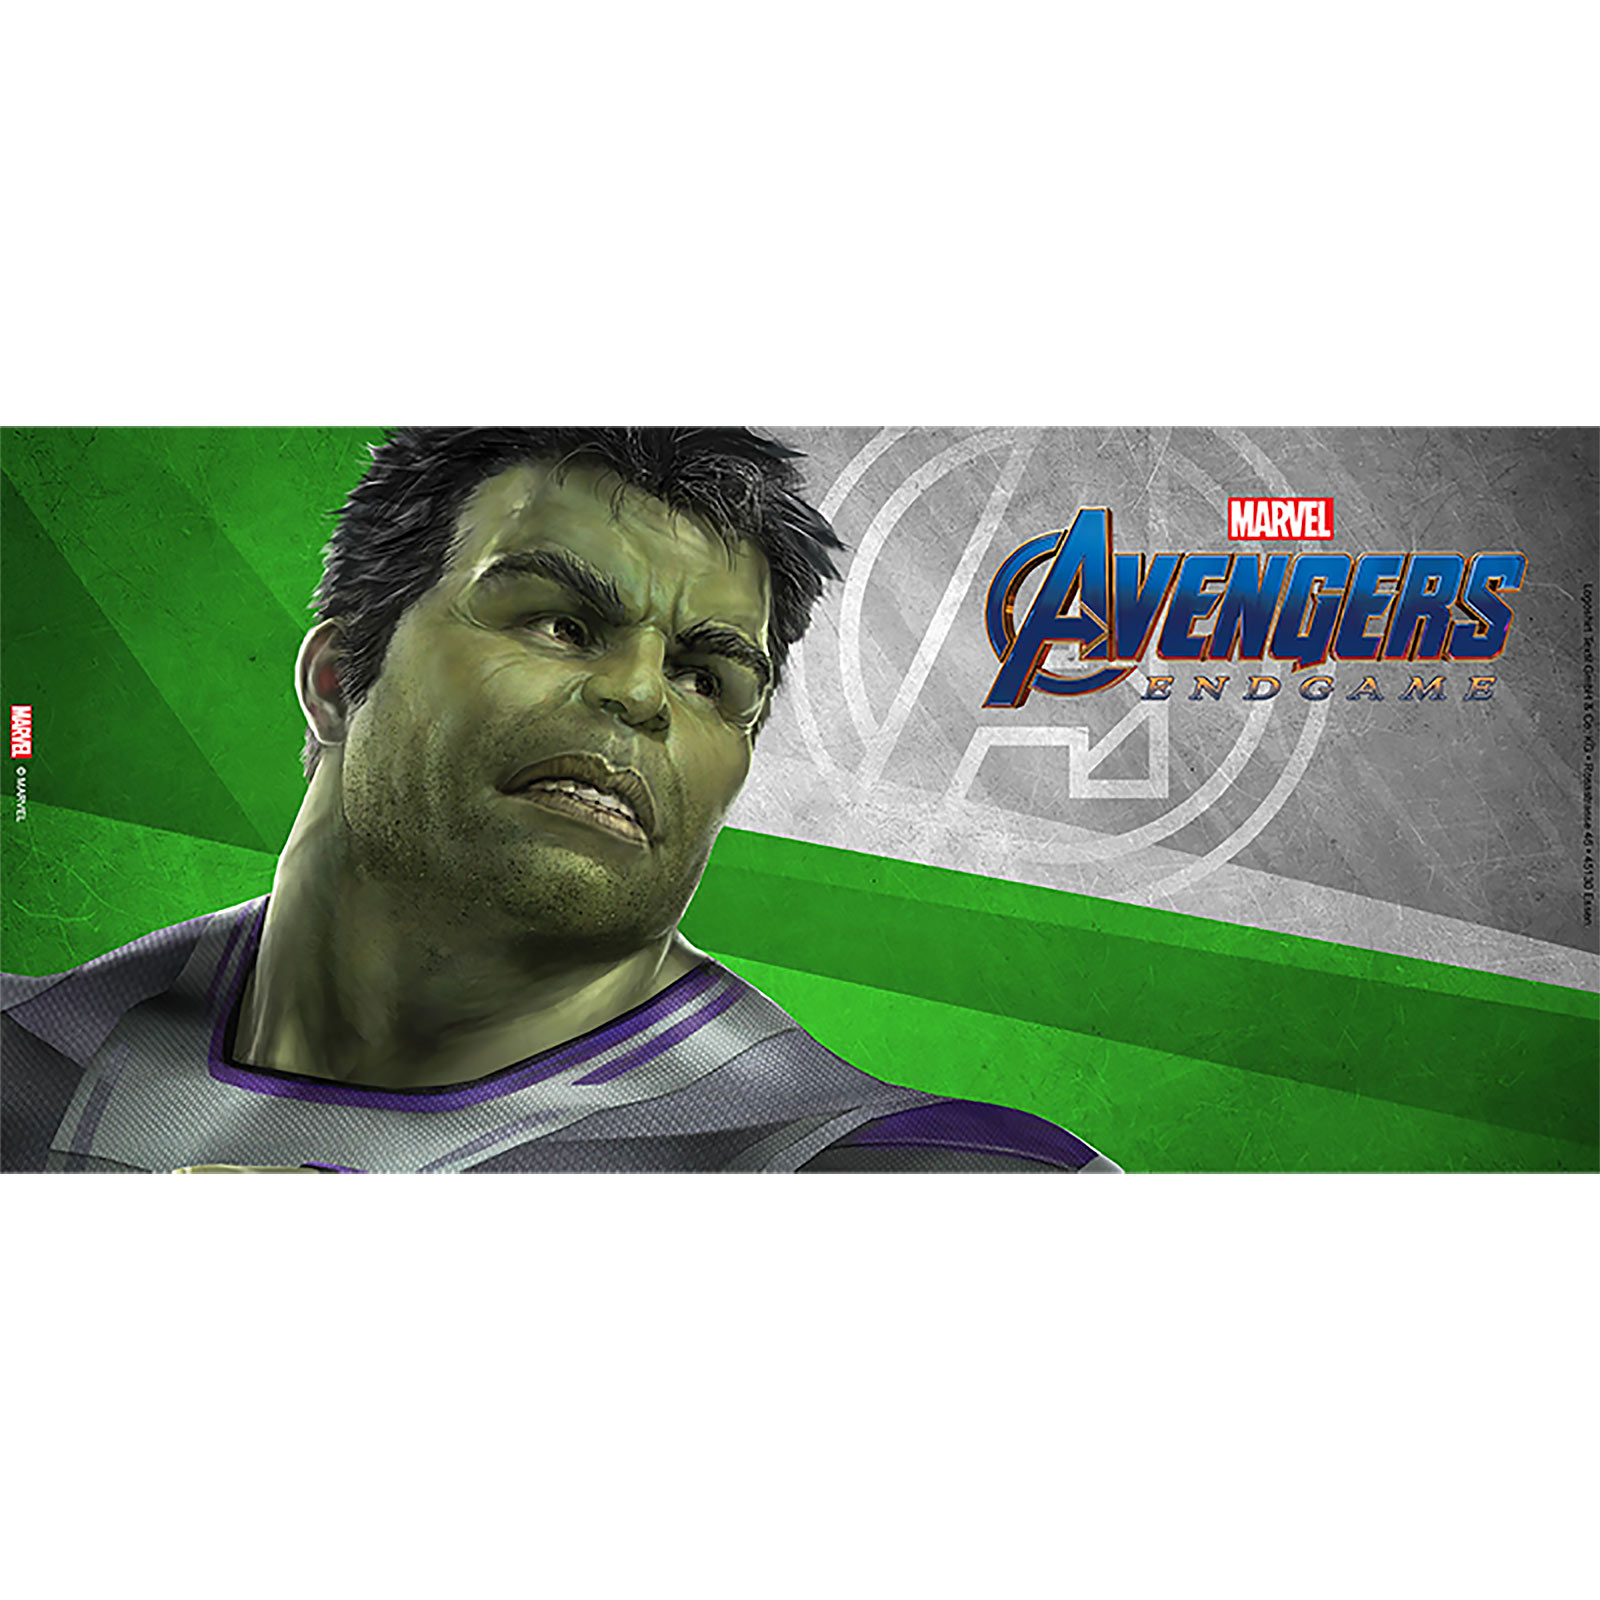 Avengers - Hulk Endgame Mok